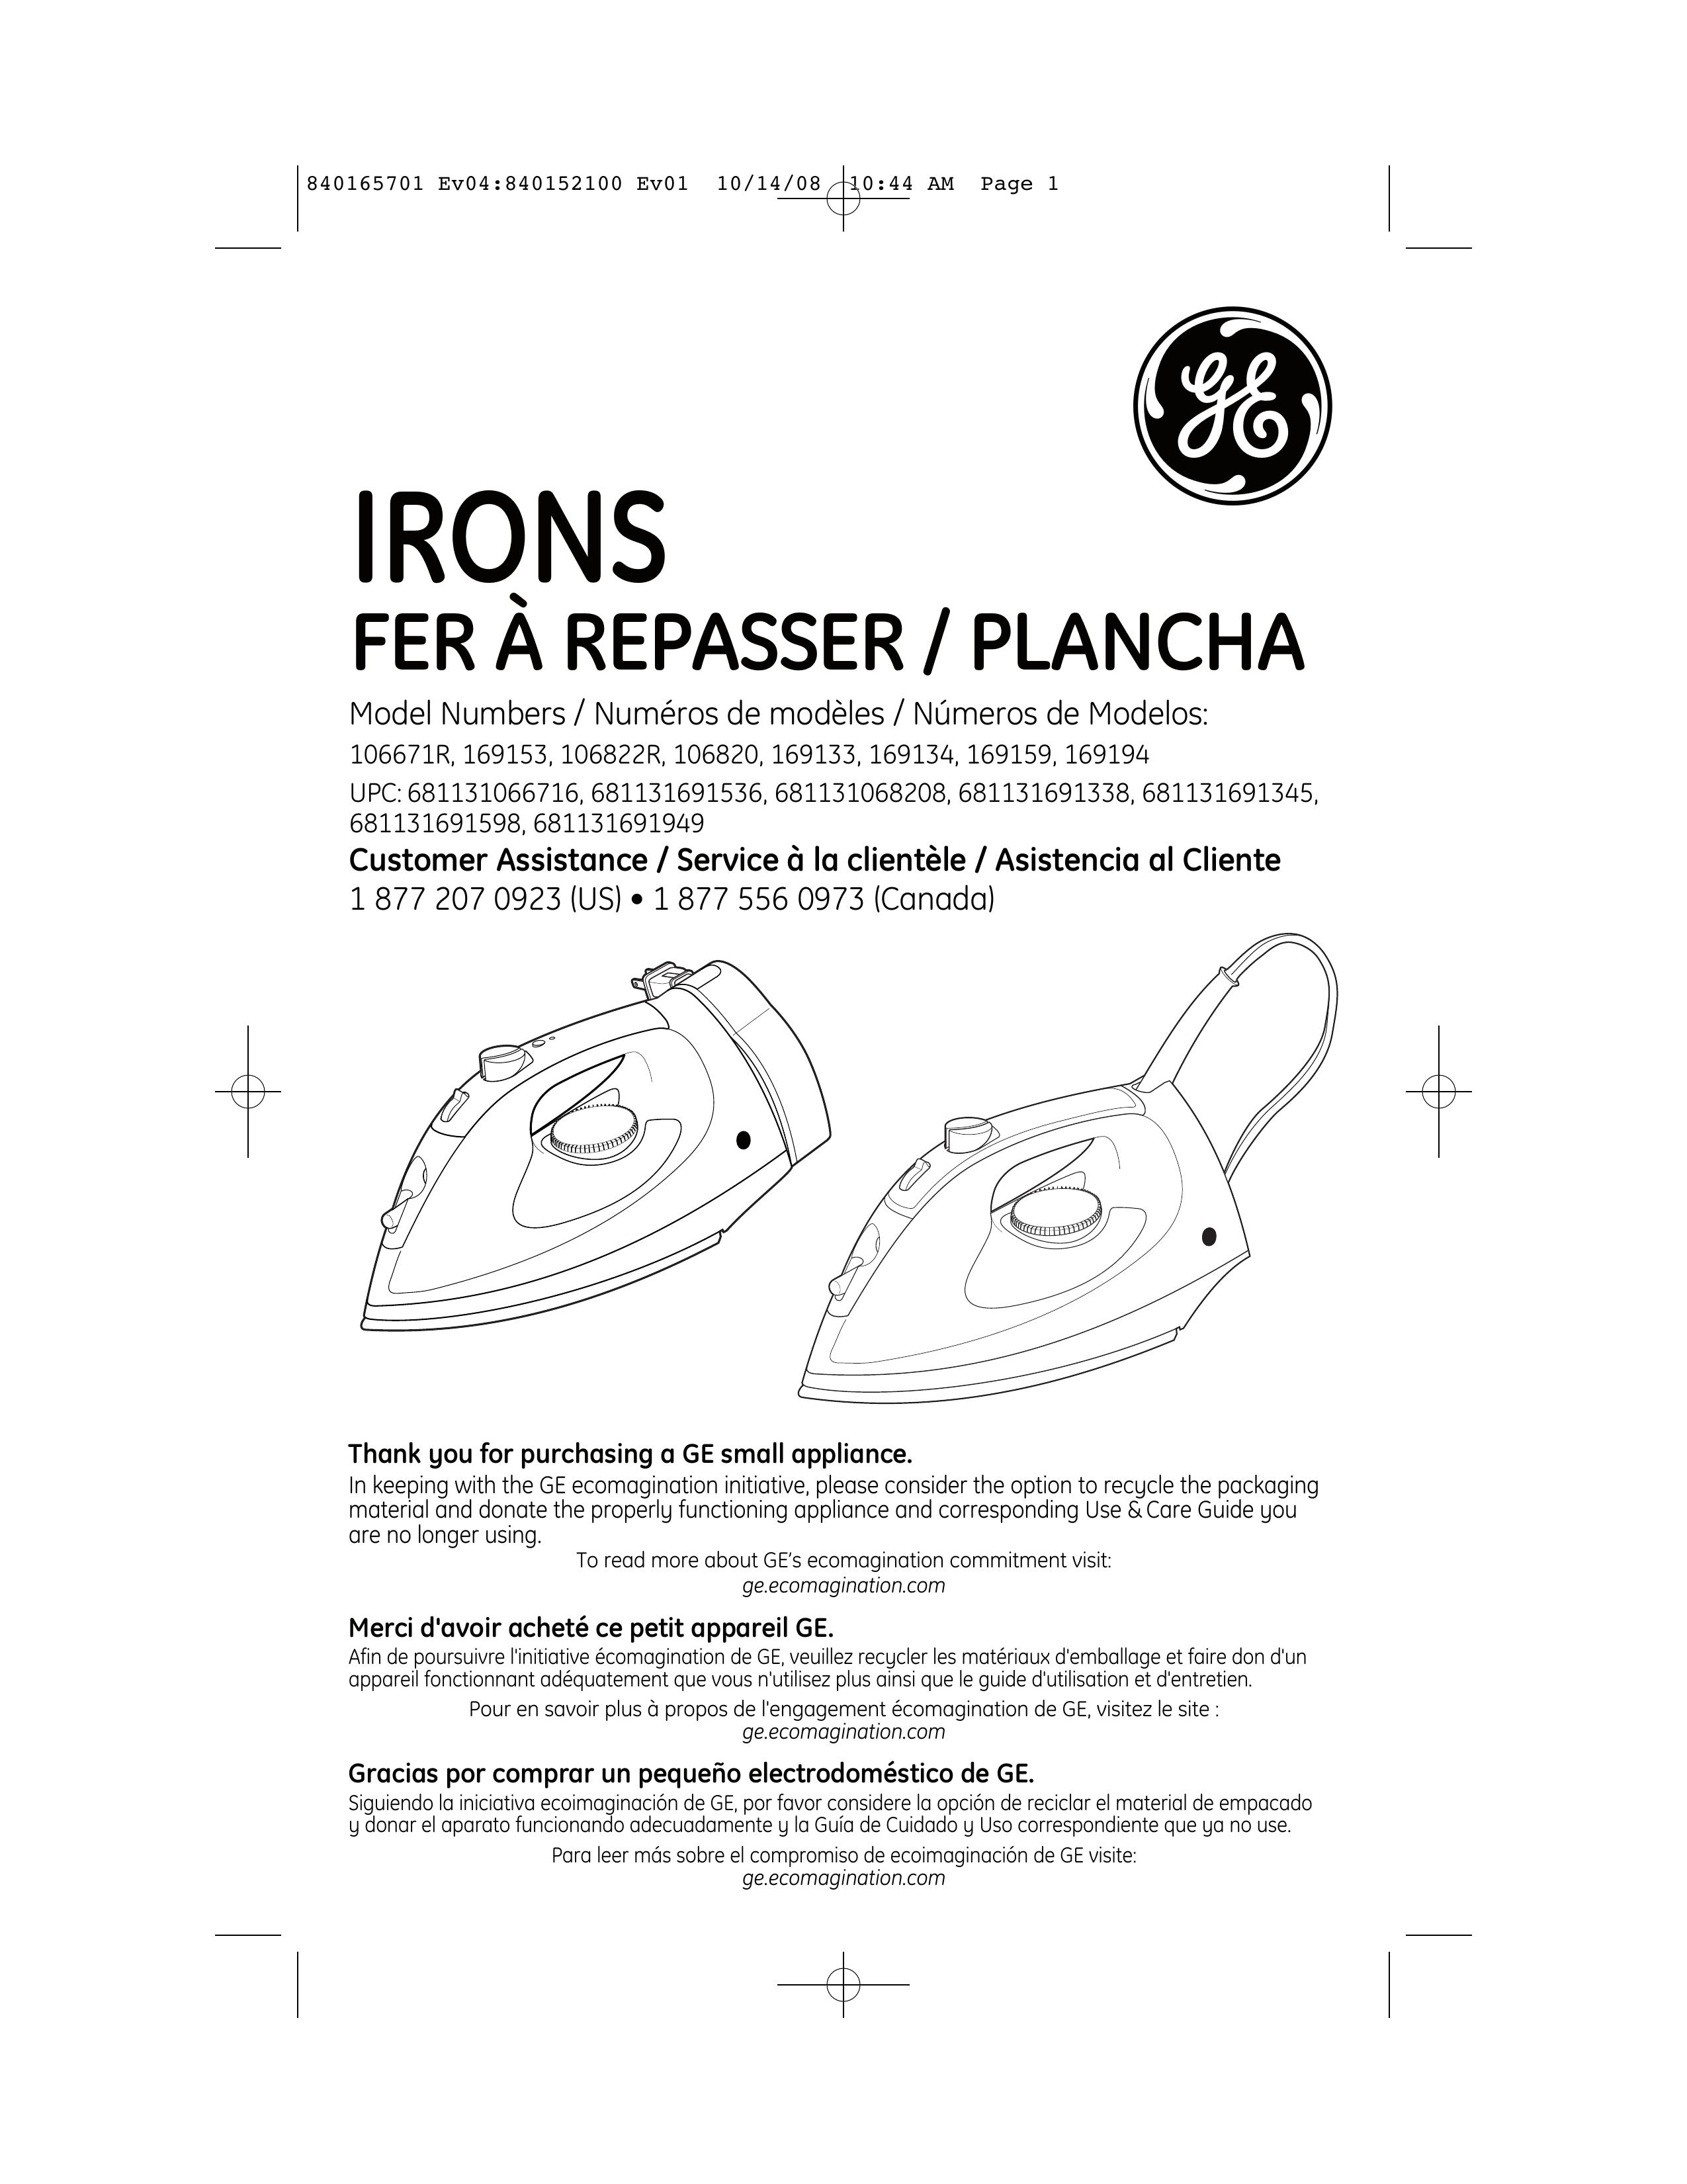 GE 681131691536 Iron User Manual